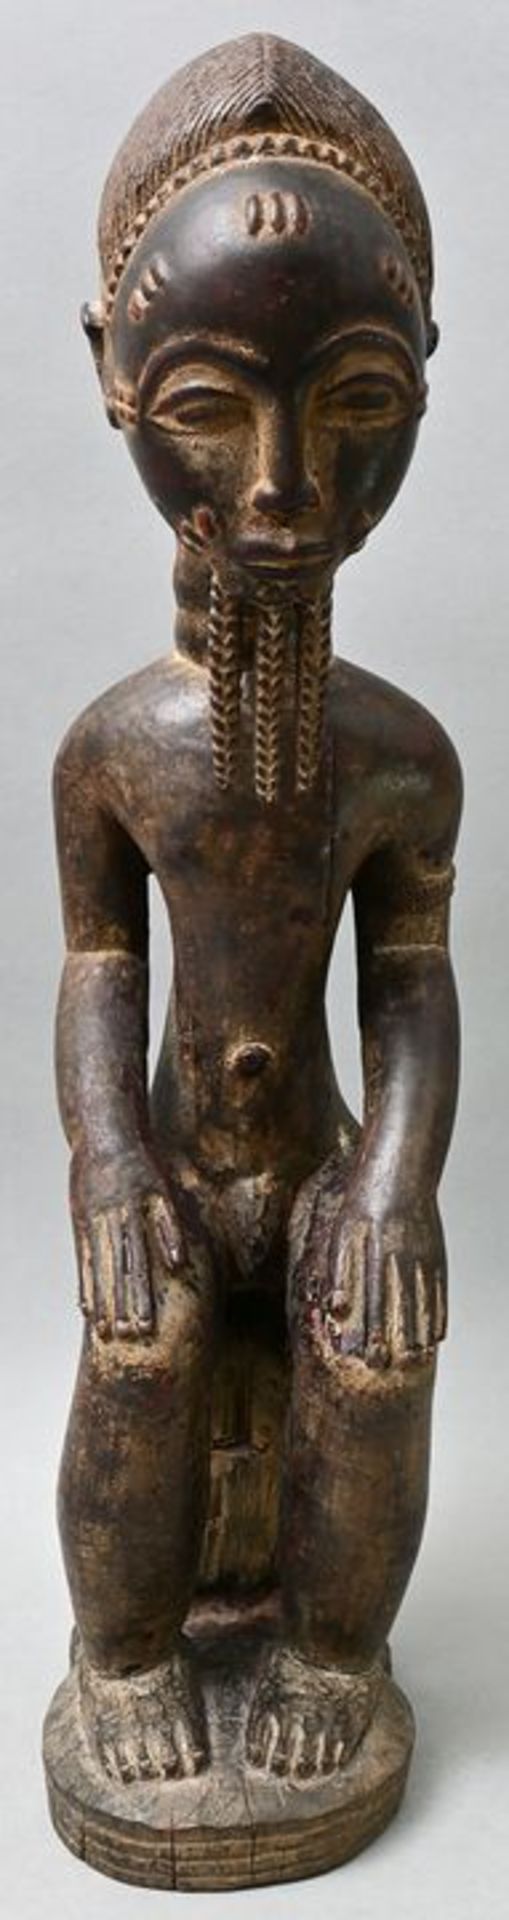 Männliche Figur/ male statue